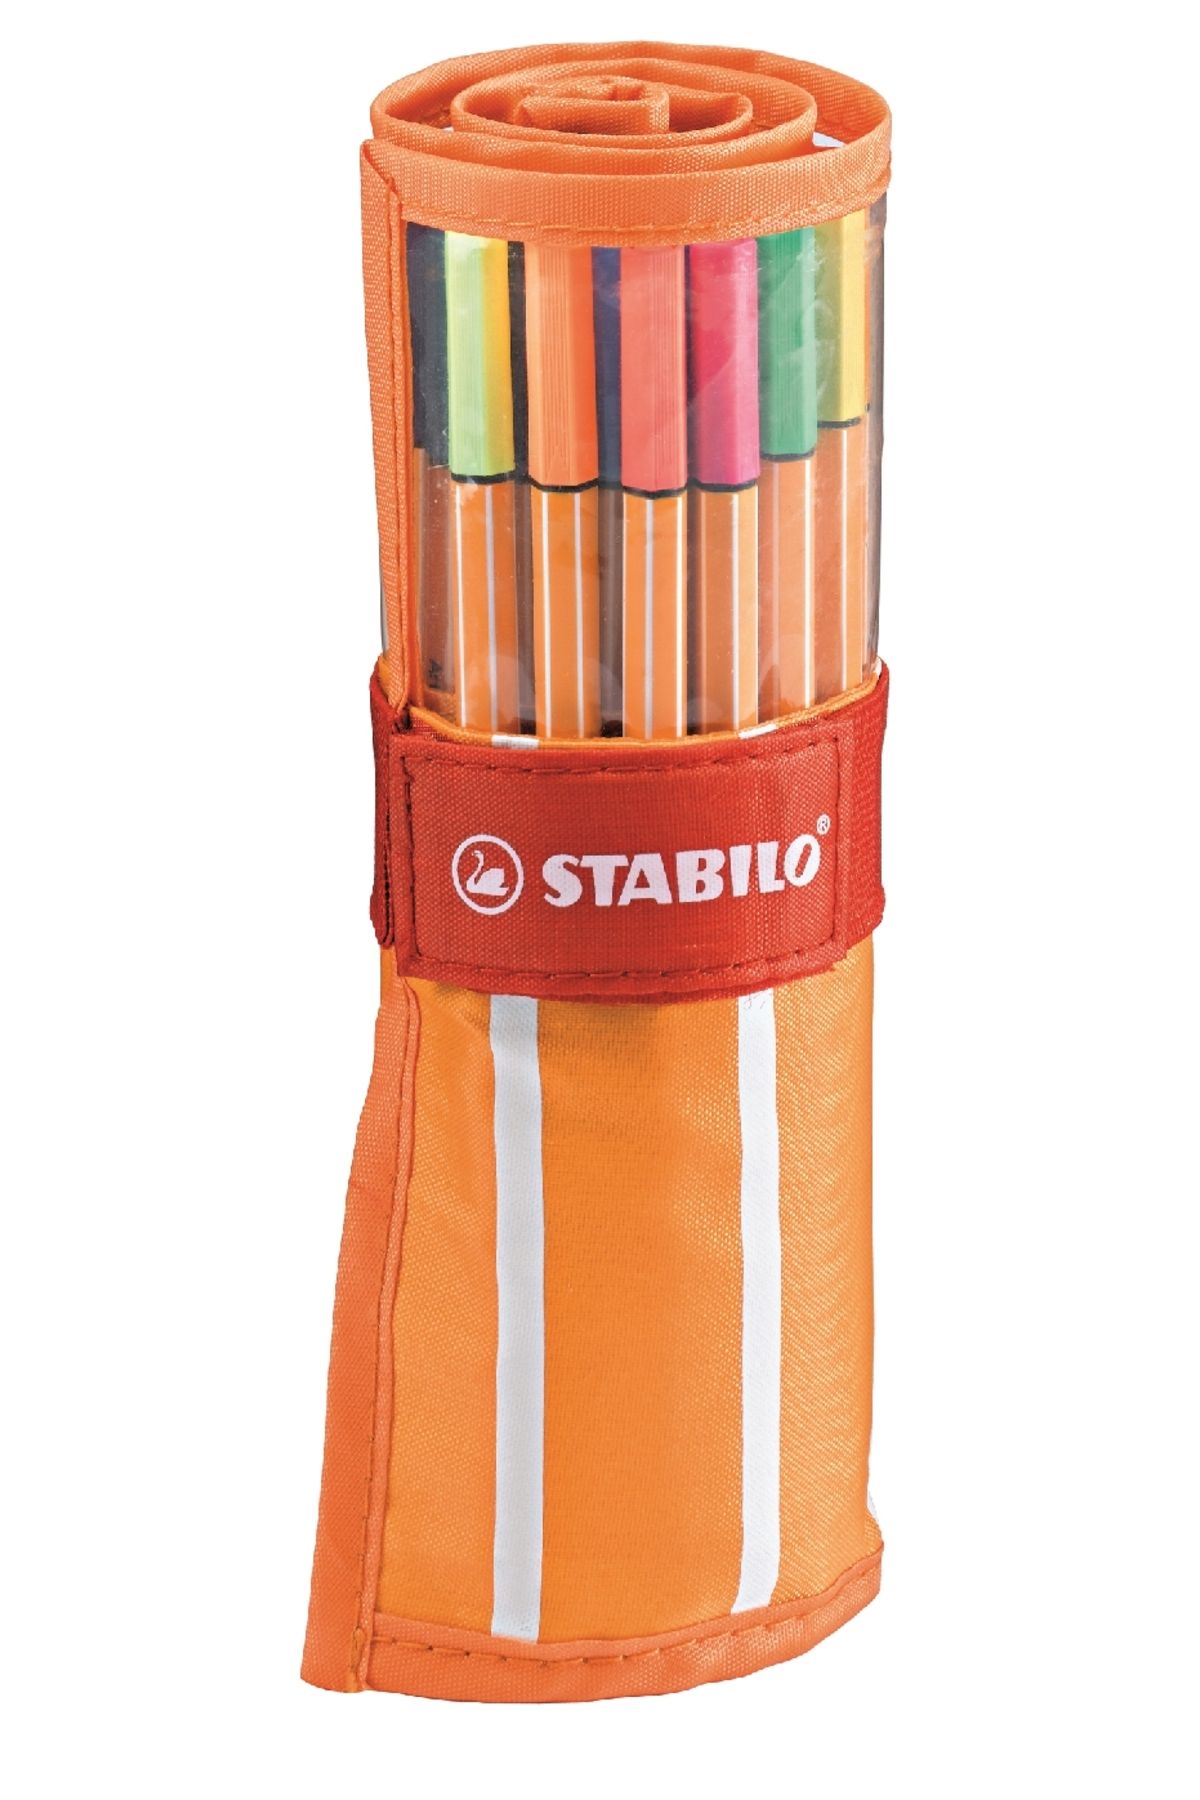 Stabilo Point 88 Ince Keçe Uçlu Kalem 25+5 Floresan Renk Rülo Çantalı Set